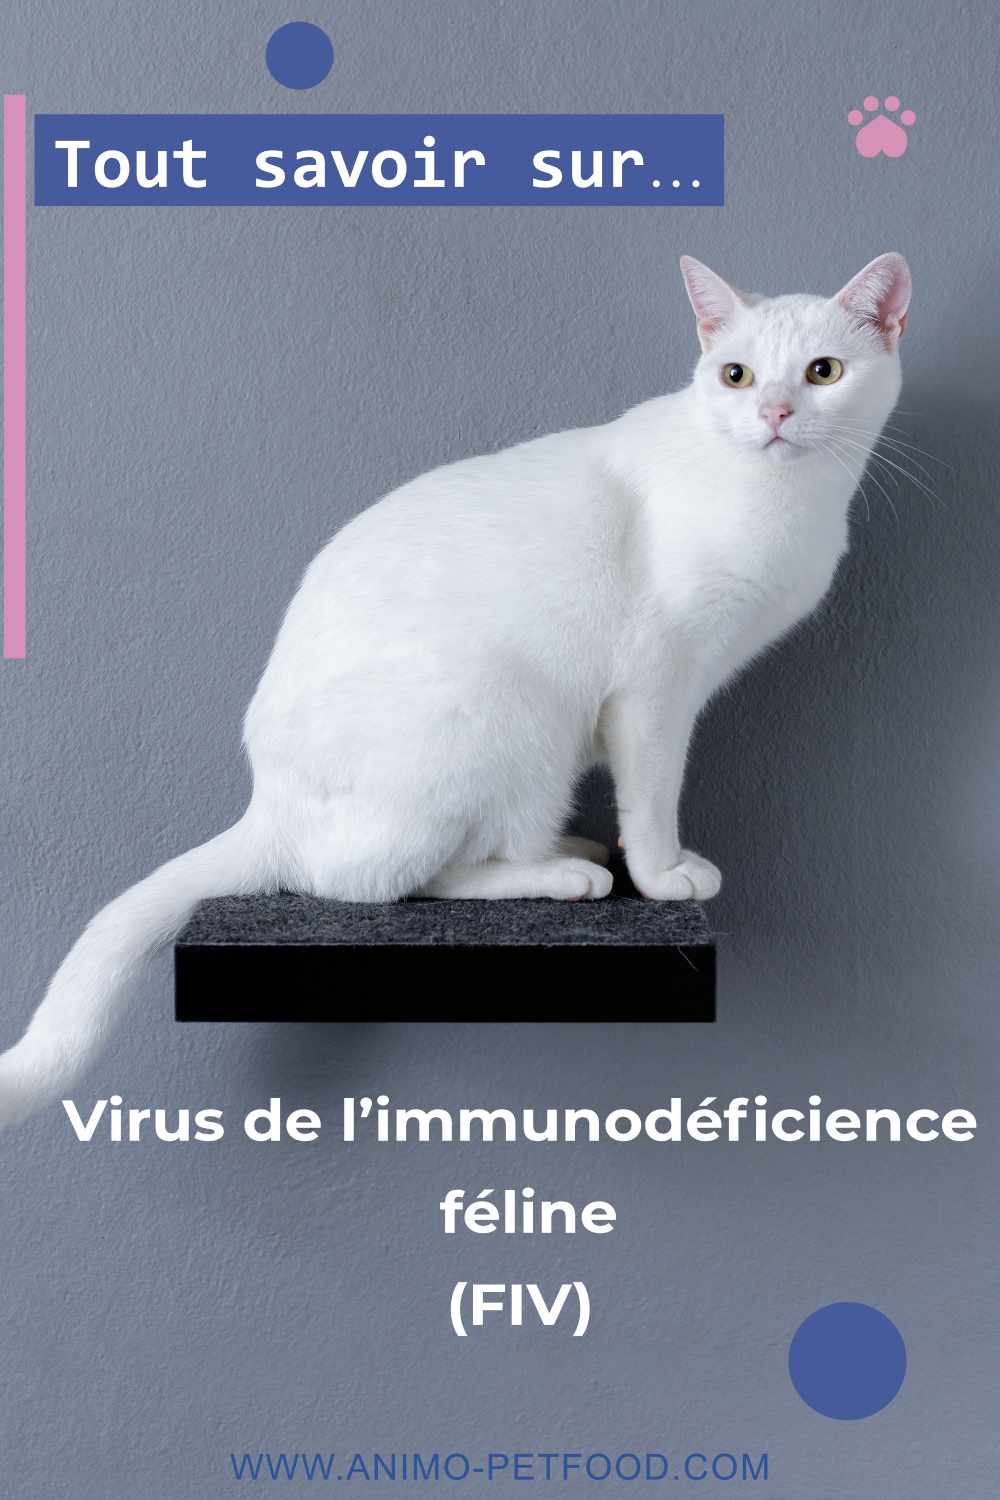 Le virus de l’immunodéficience féline (FIV)